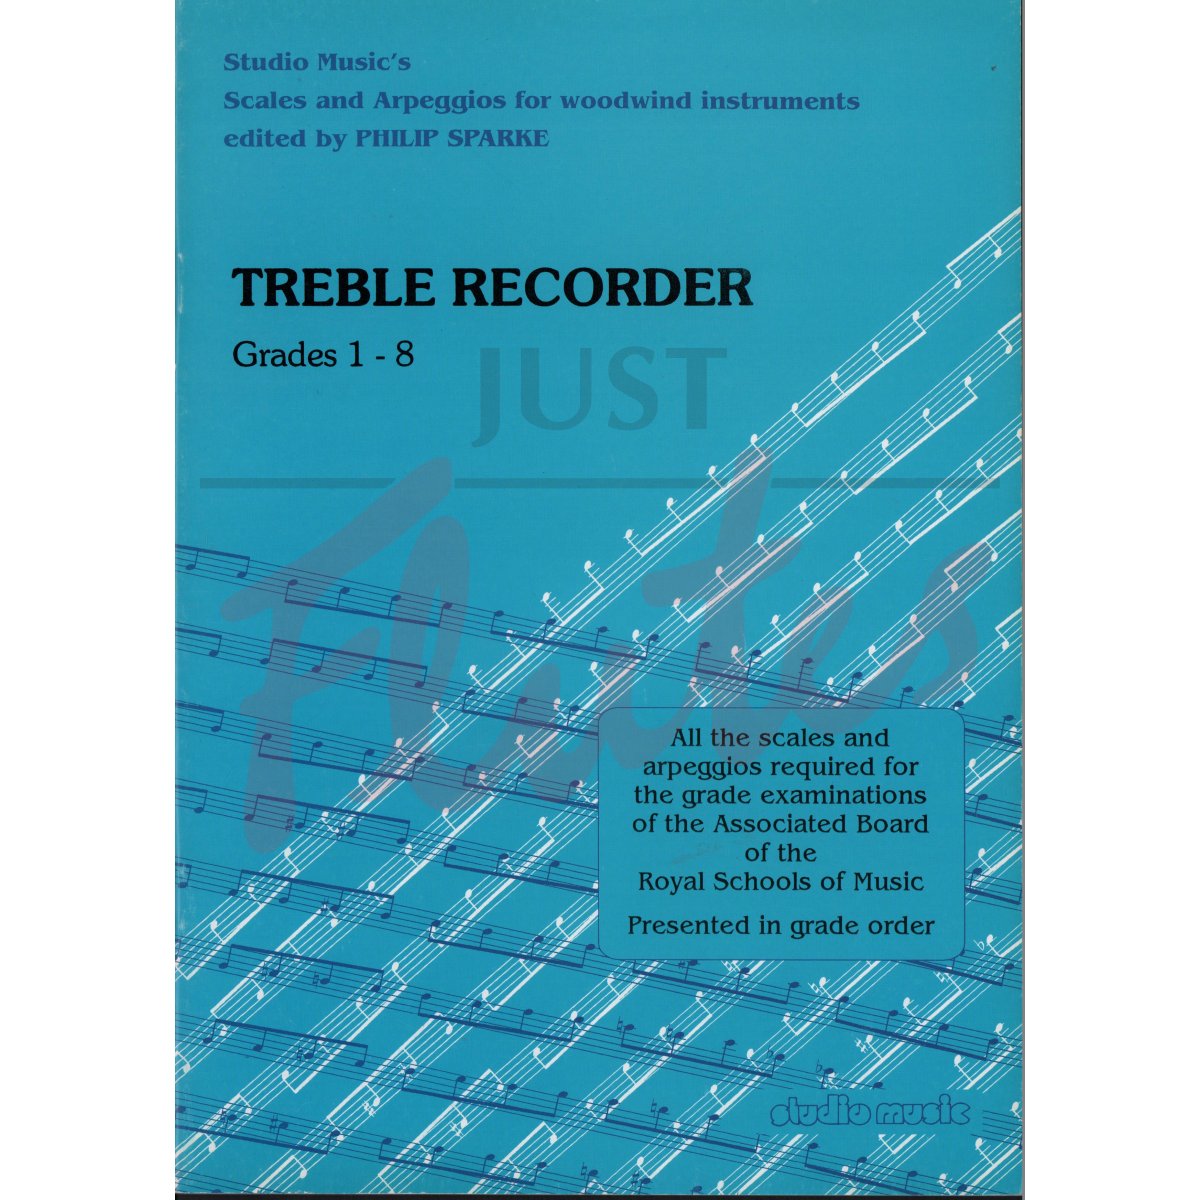 Scales and Arpeggios Grades 1-8 for Treble Recorder